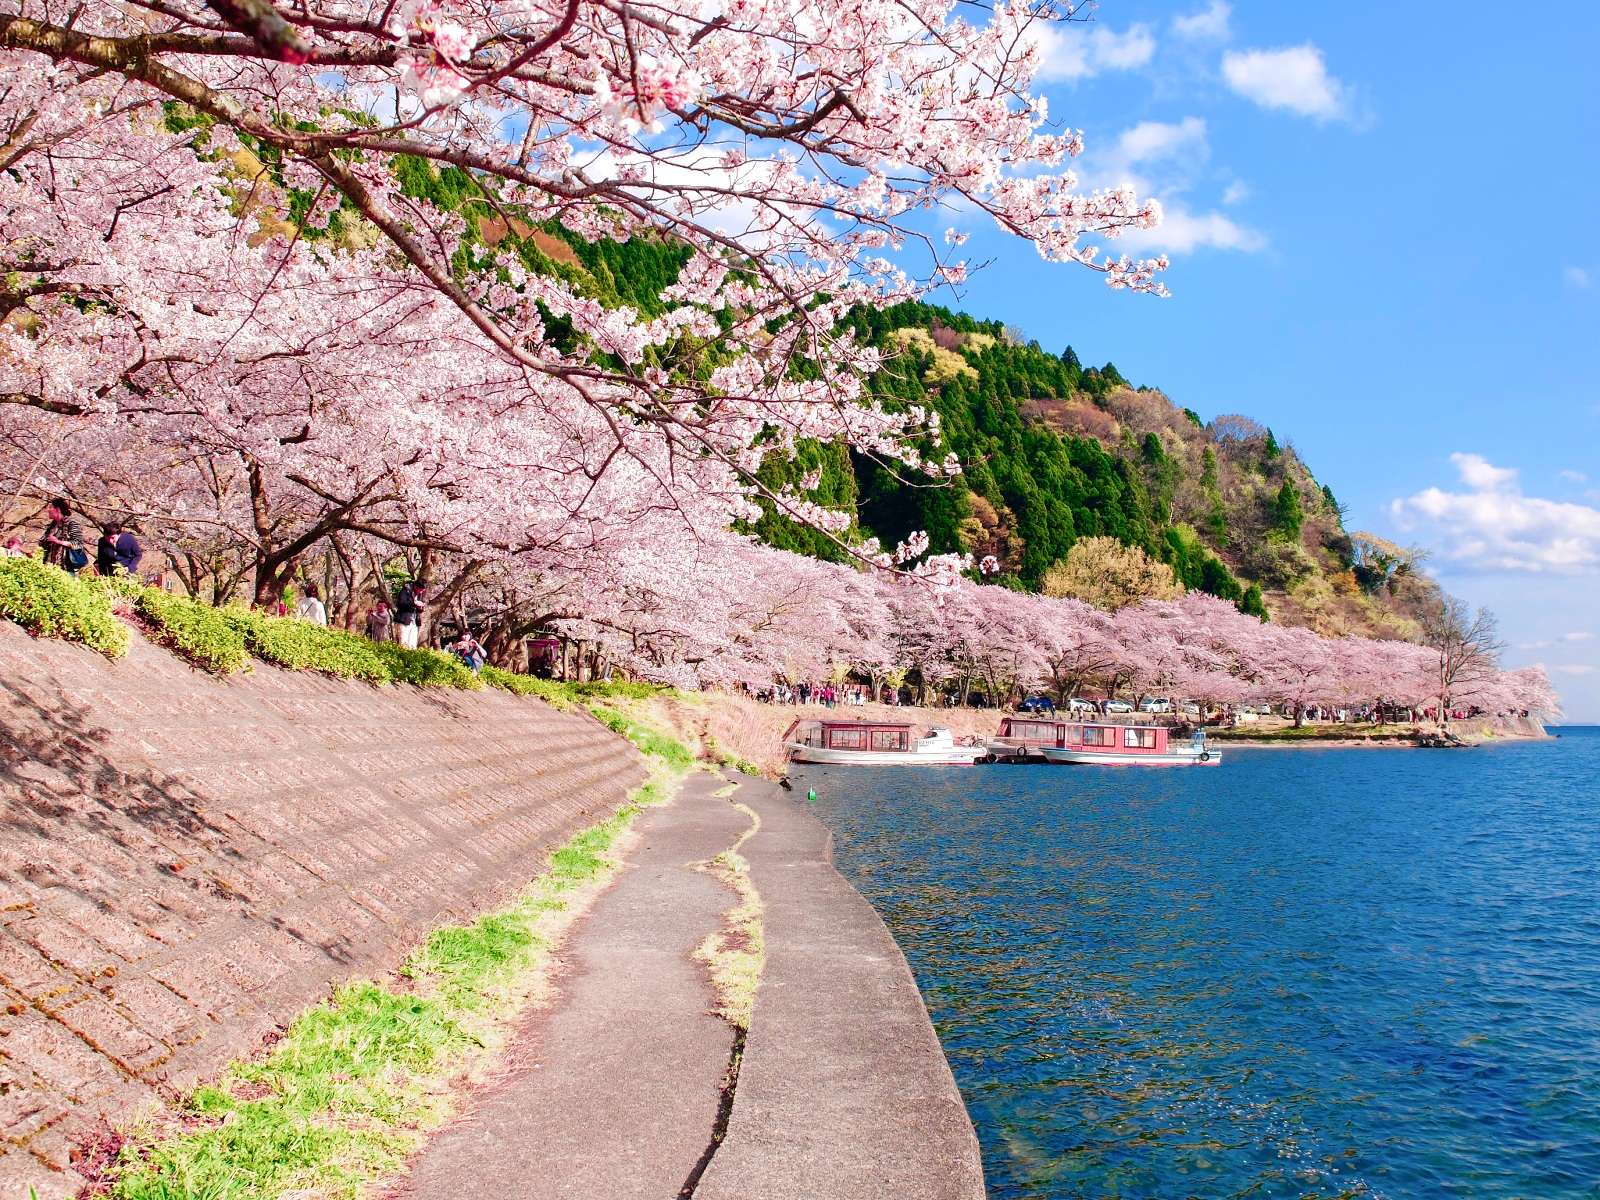 桜のトンネルと琵琶湖八景のコラボレーション